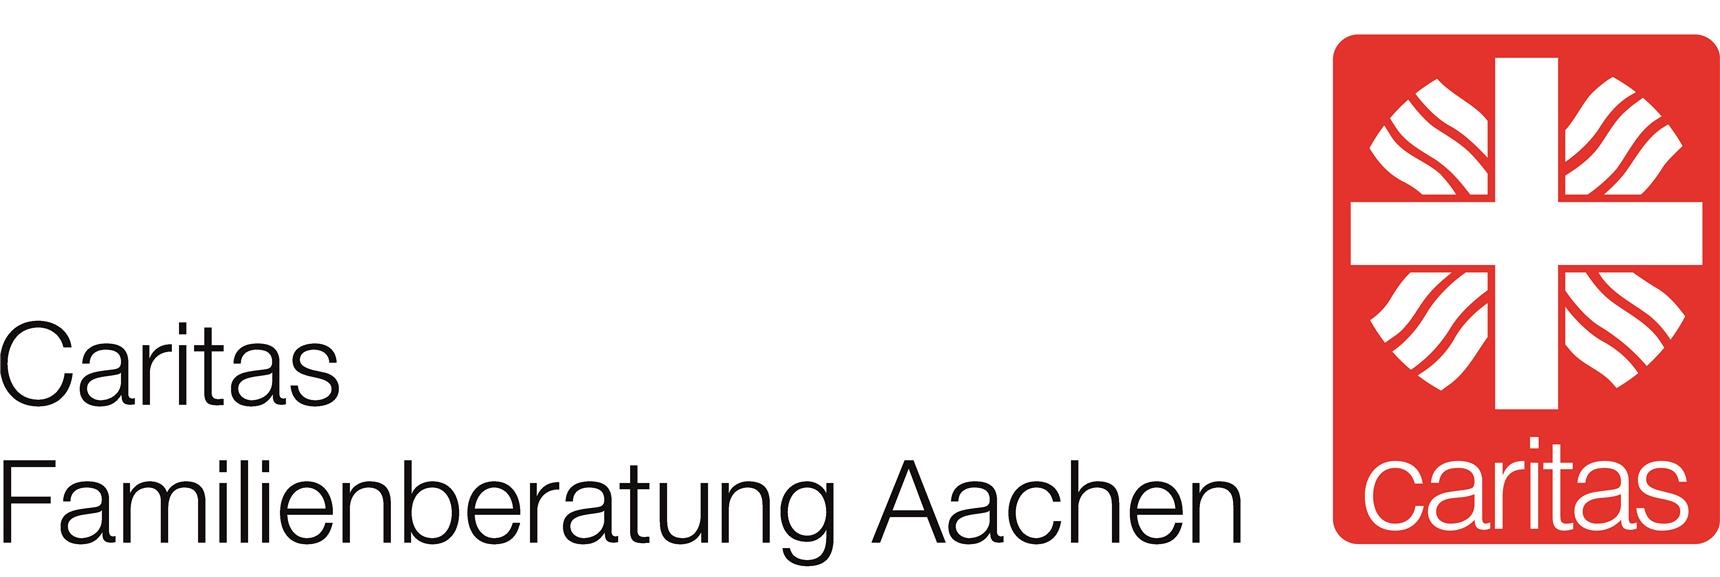 Logo Aachen